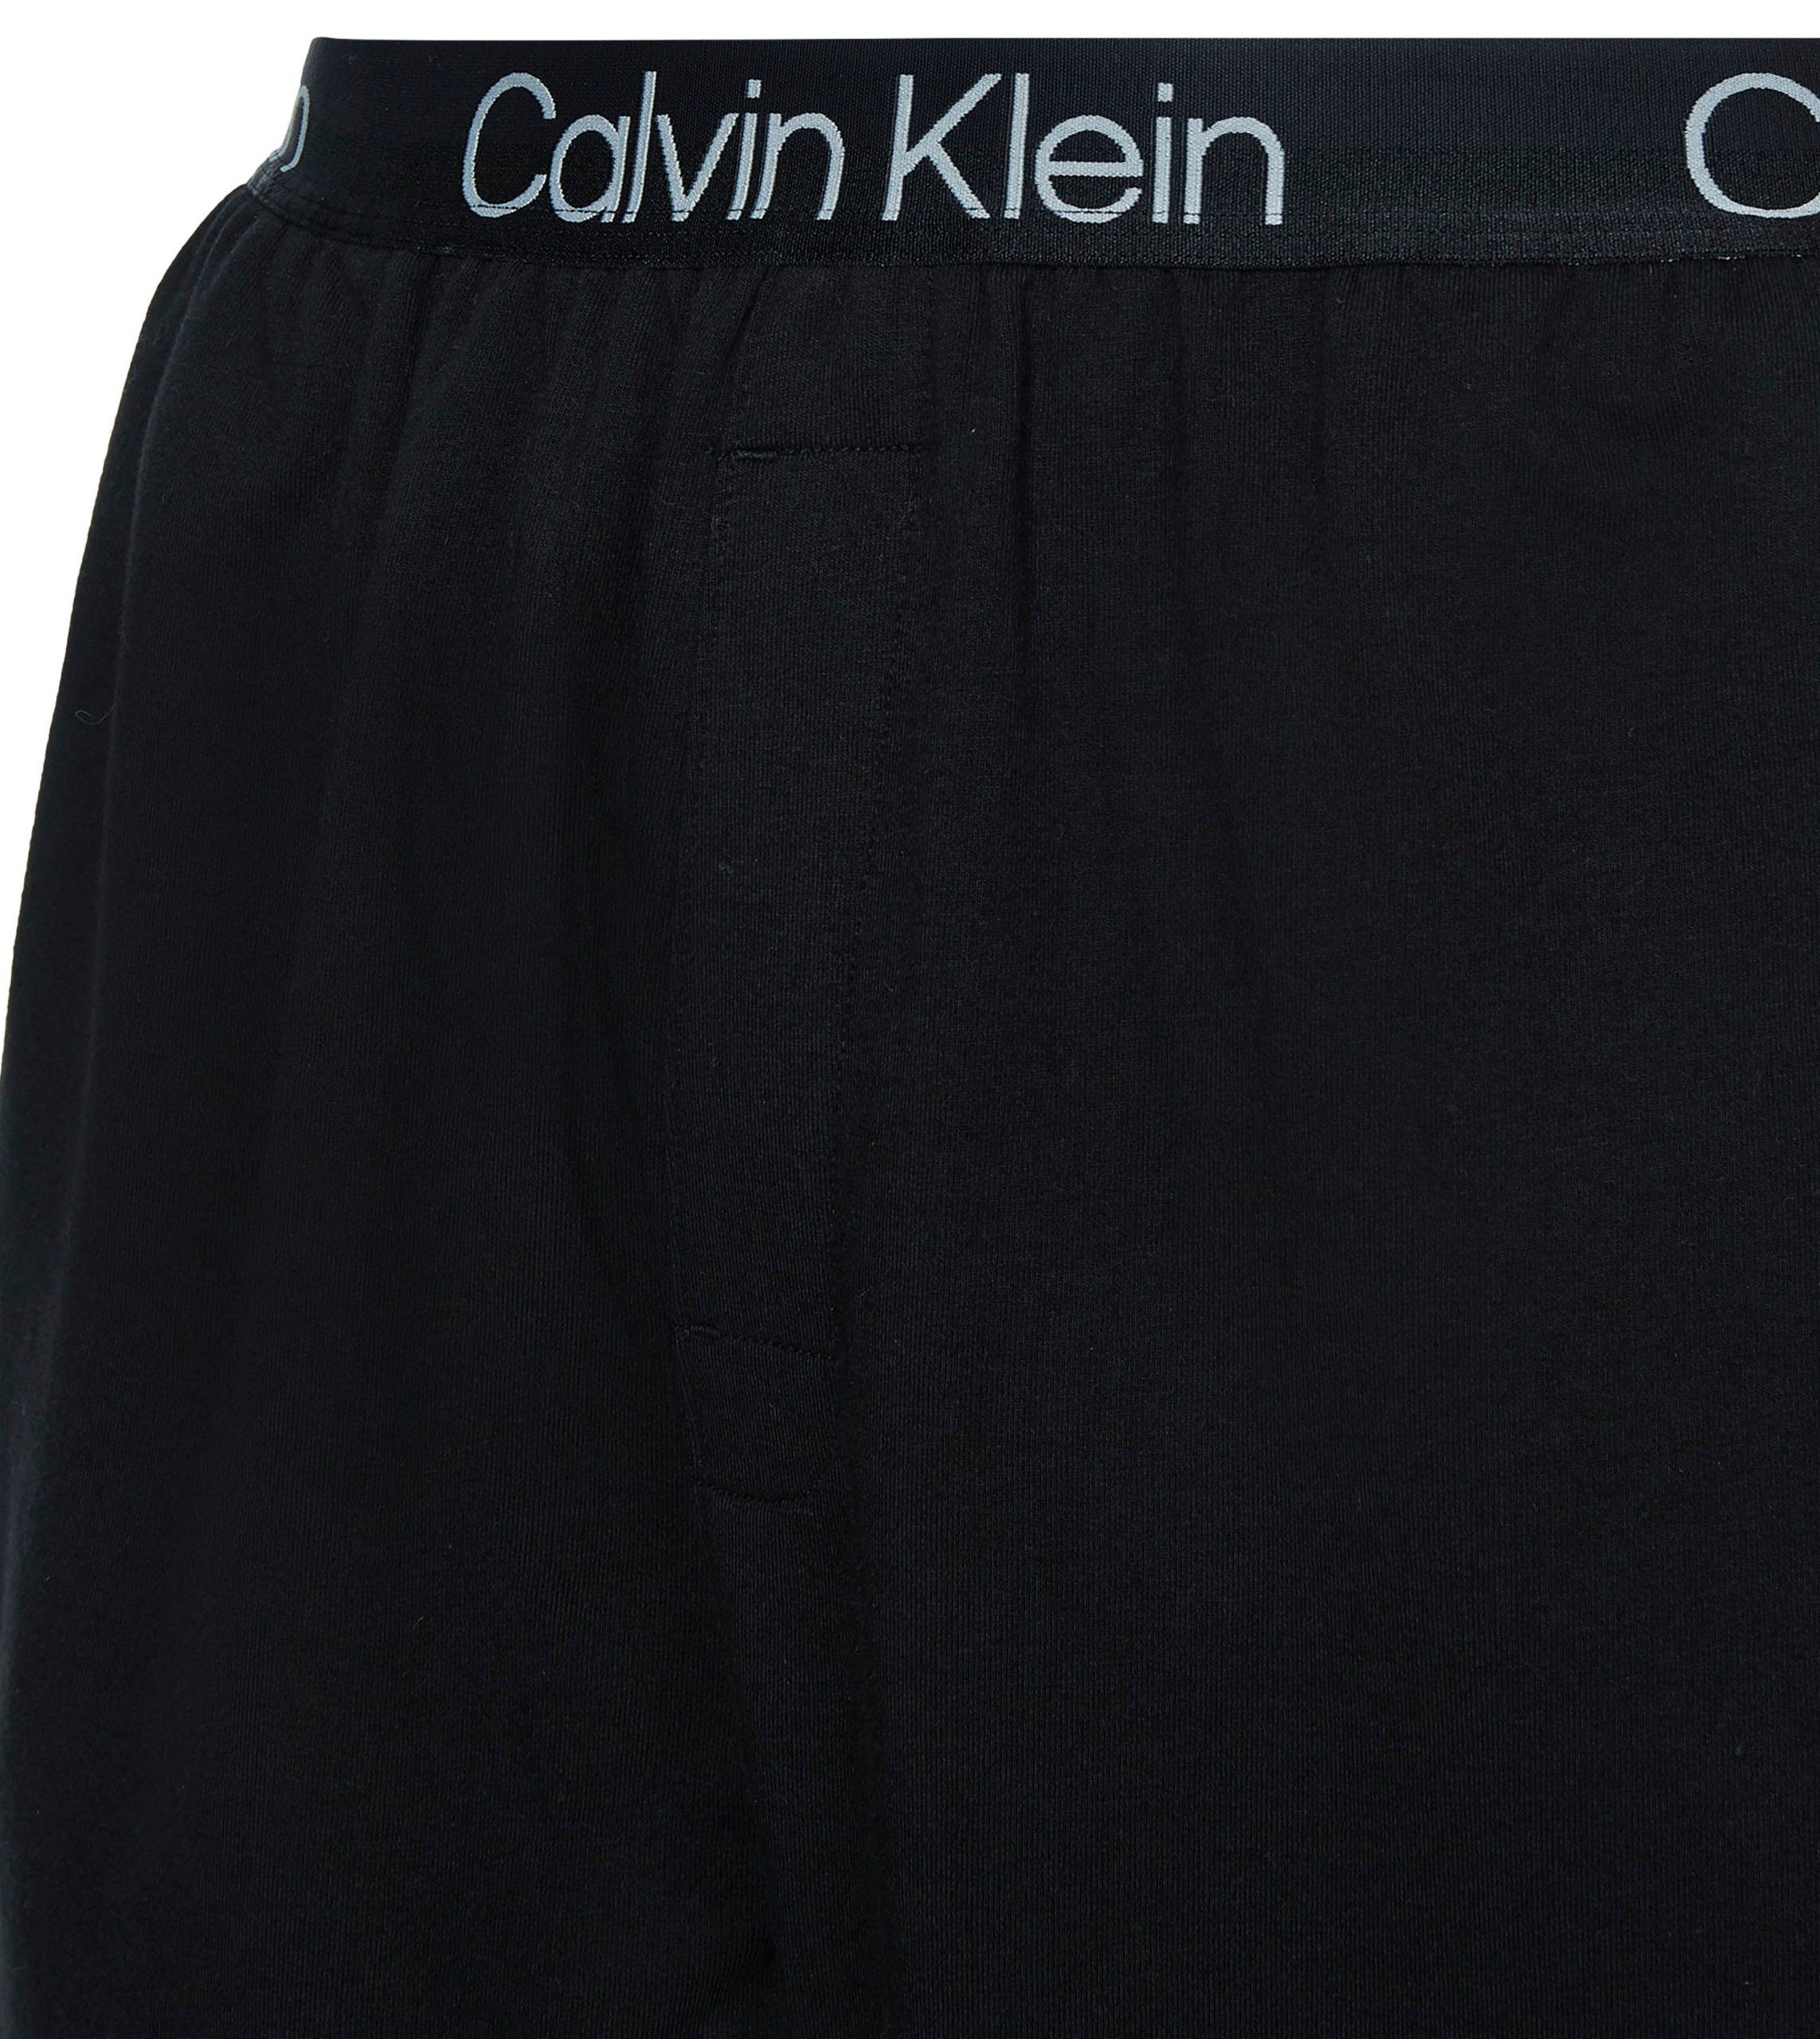 Klein Underwear Calvin Relaxhose